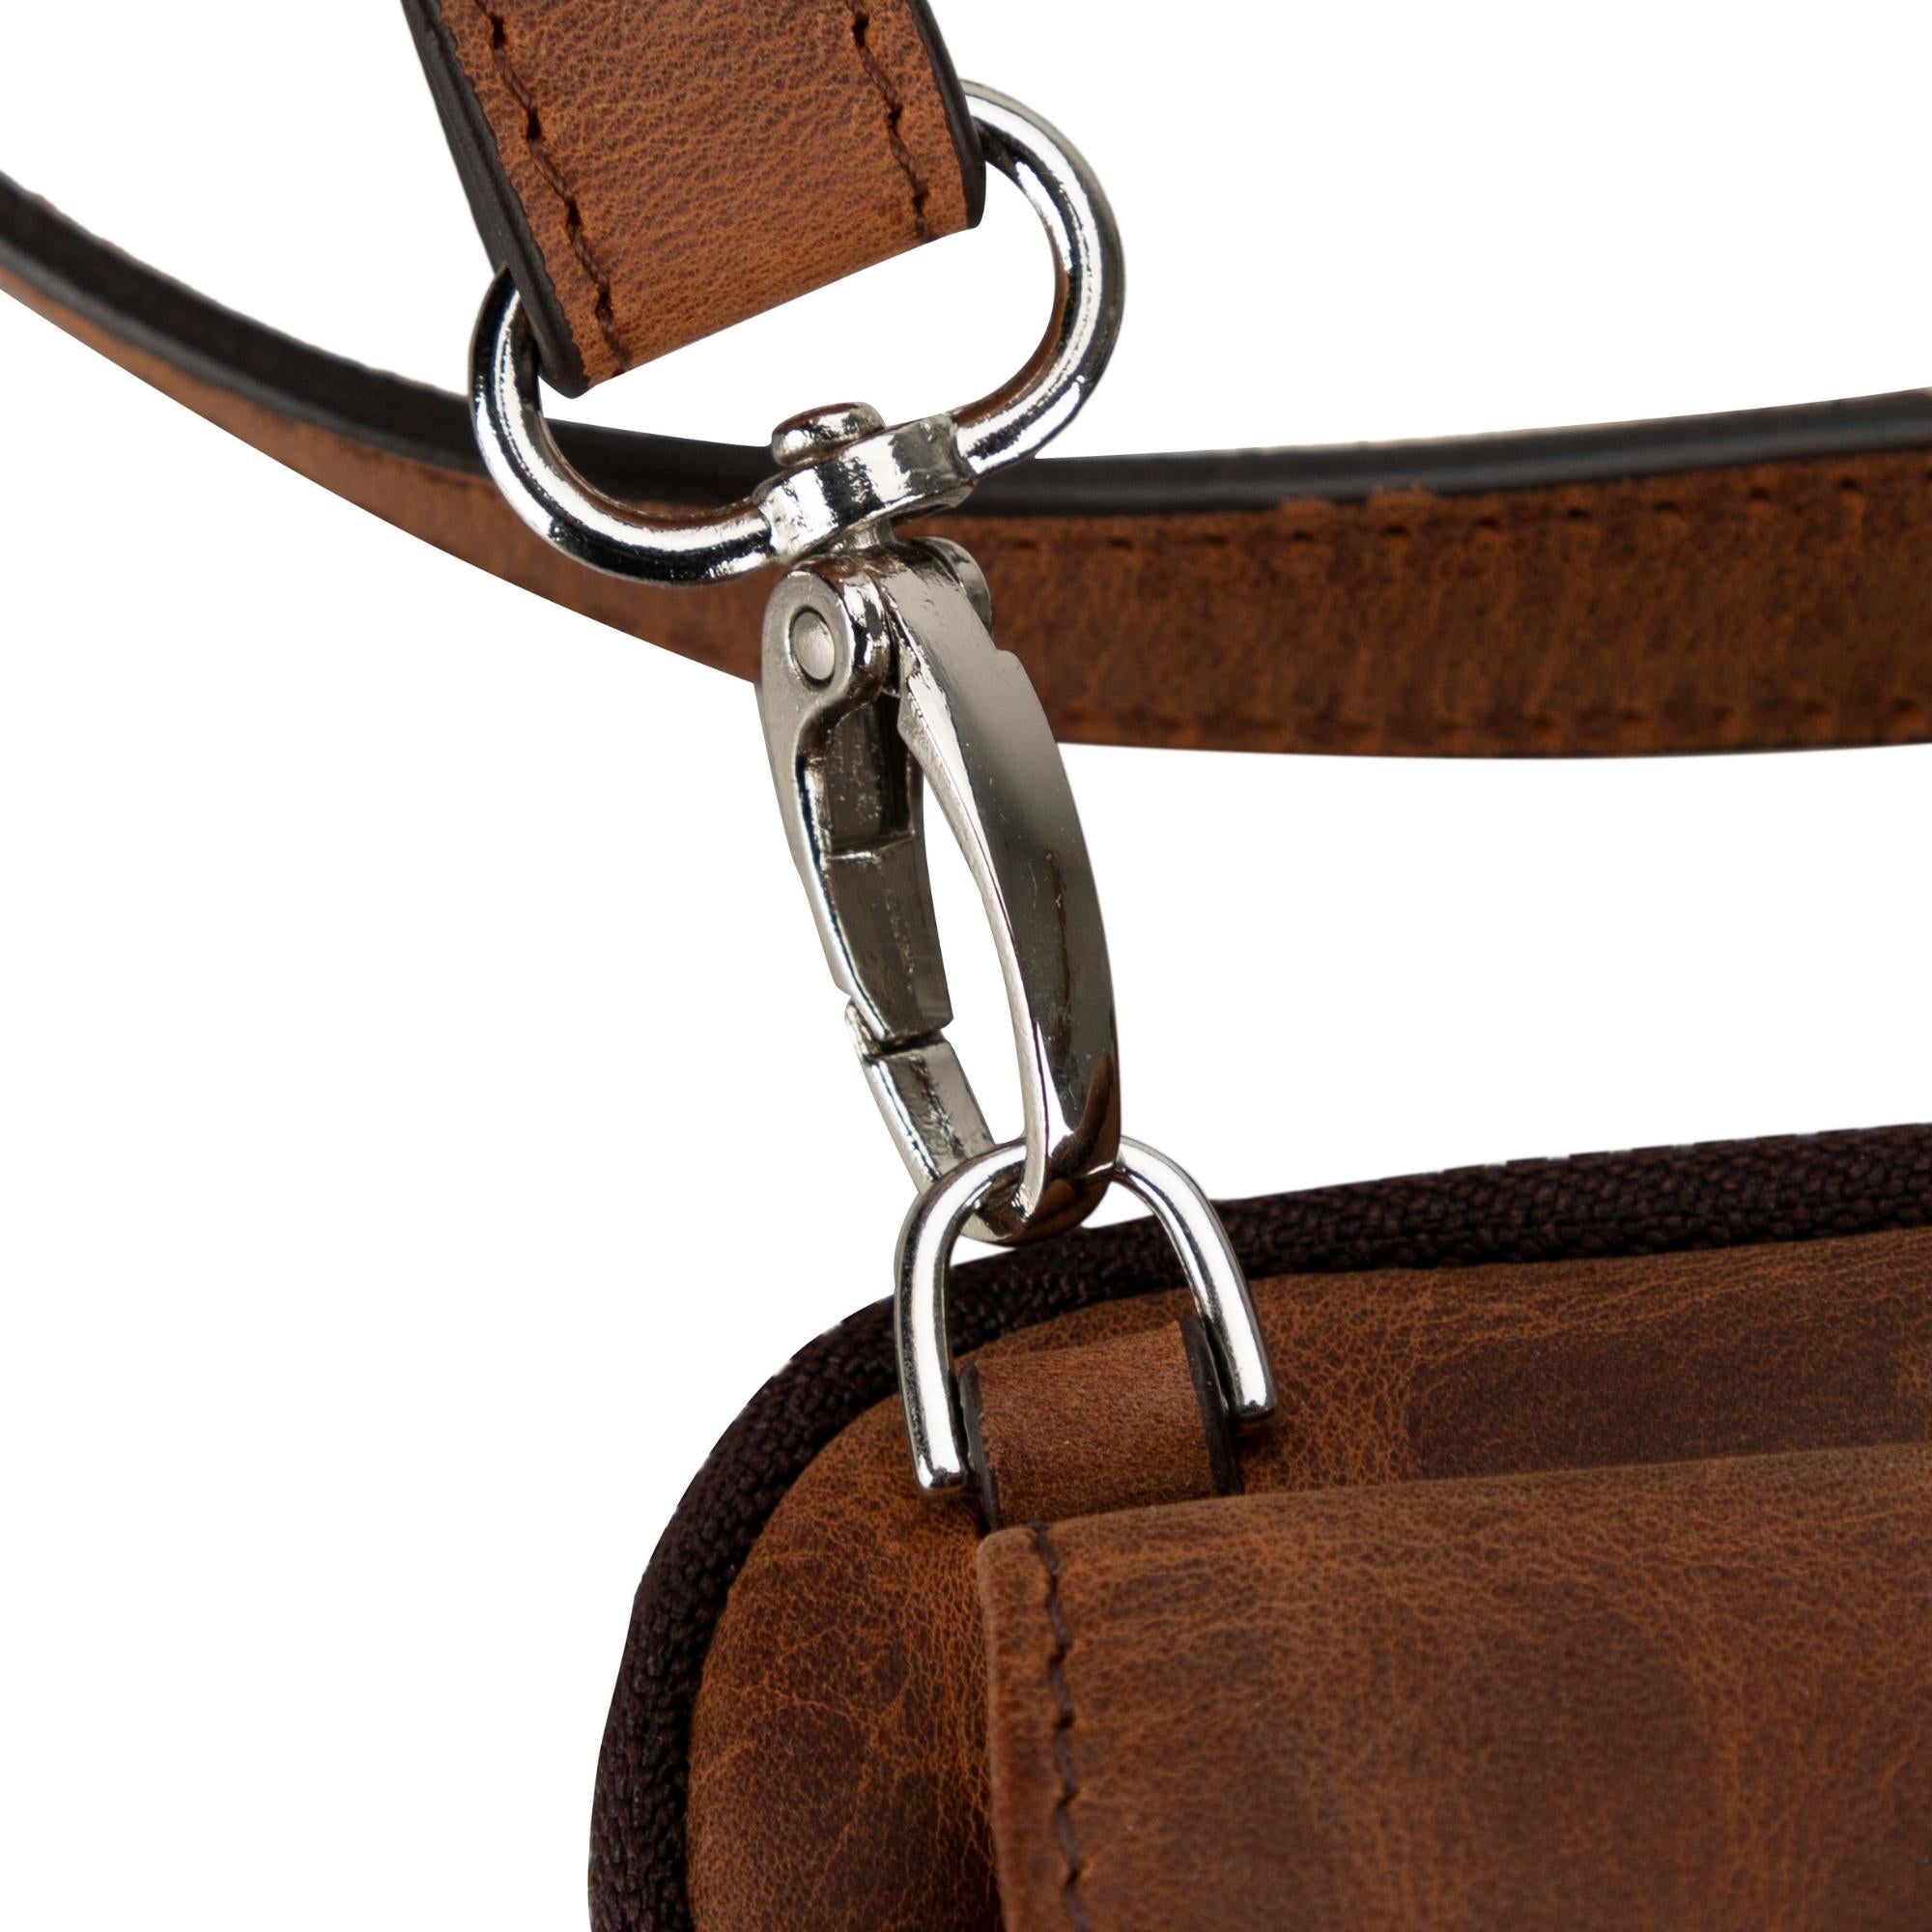 Niagara Leather Crossbody Phone Bag for Men - Dark Brown - TORONATA